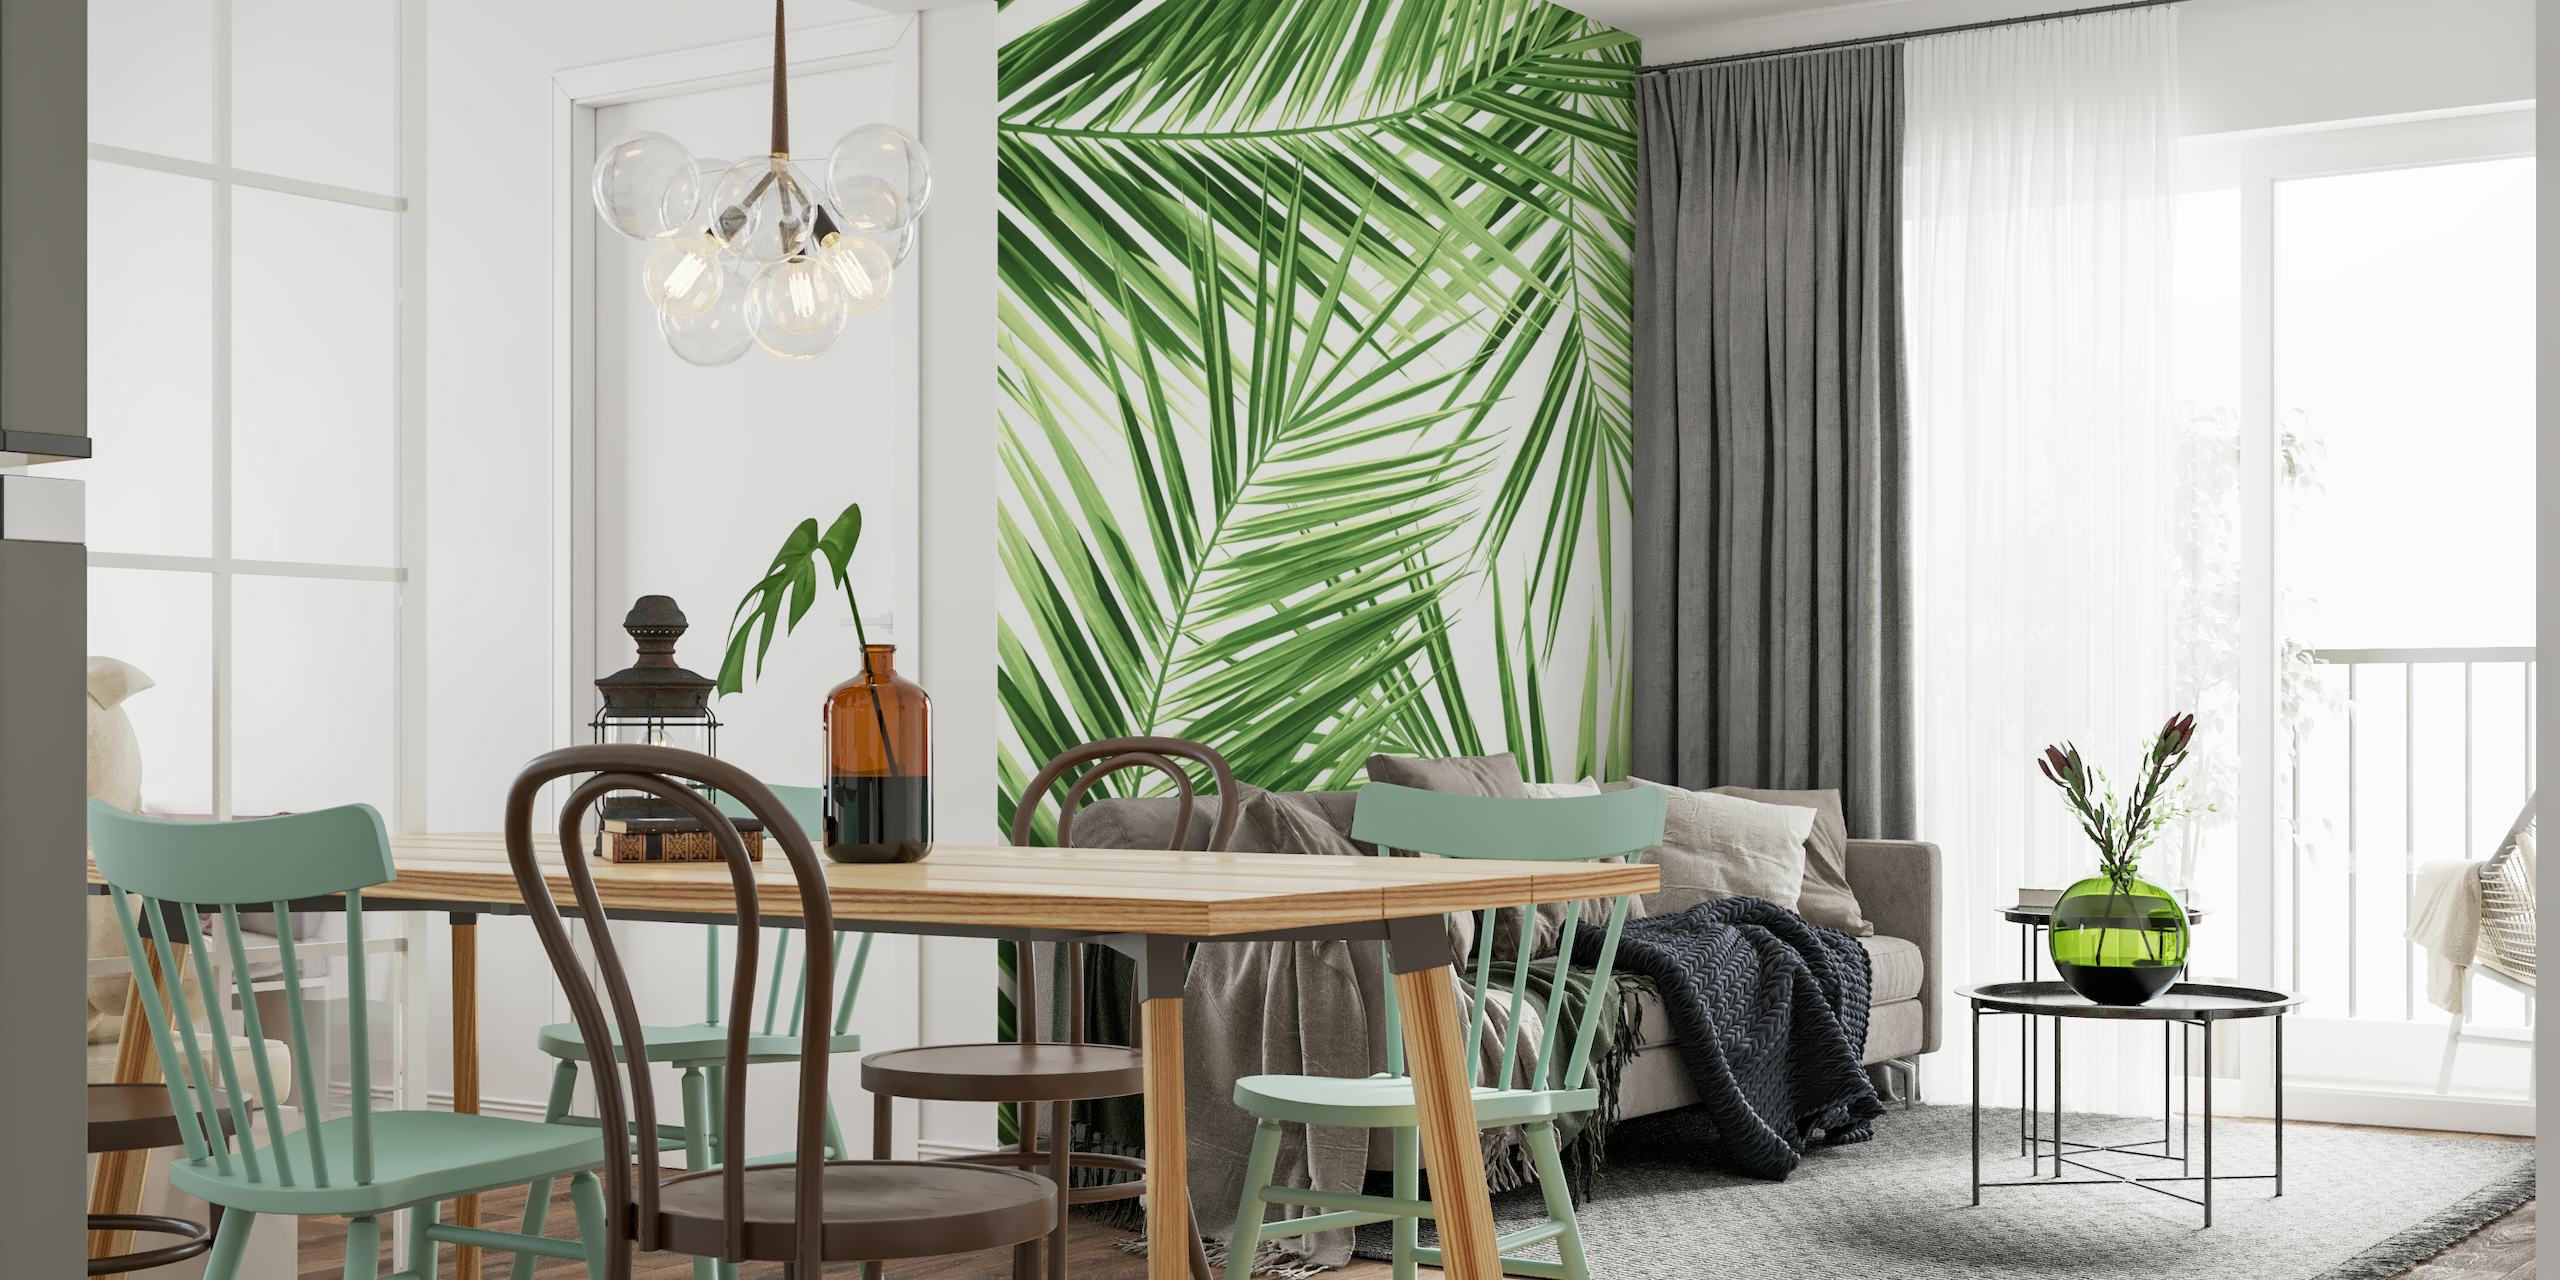 Grønt palmeblad mønster vægmaleri til en tropisk-tema indretning